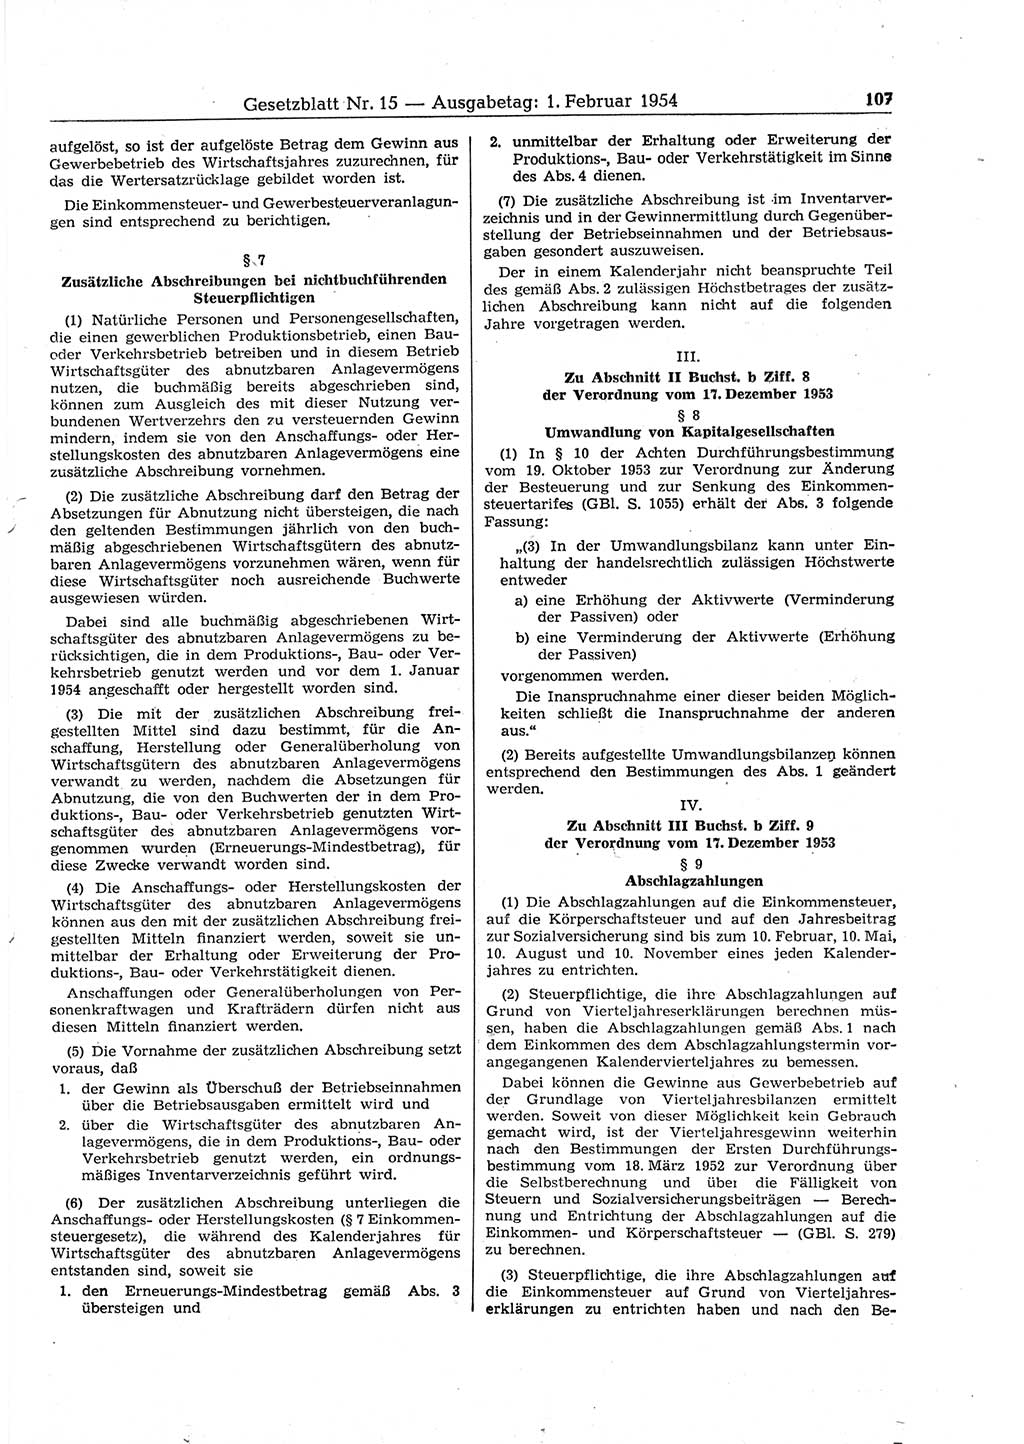 Gesetzblatt (GBl.) der Deutschen Demokratischen Republik (DDR) 1954, Seite 107 (GBl. DDR 1954, S. 107)